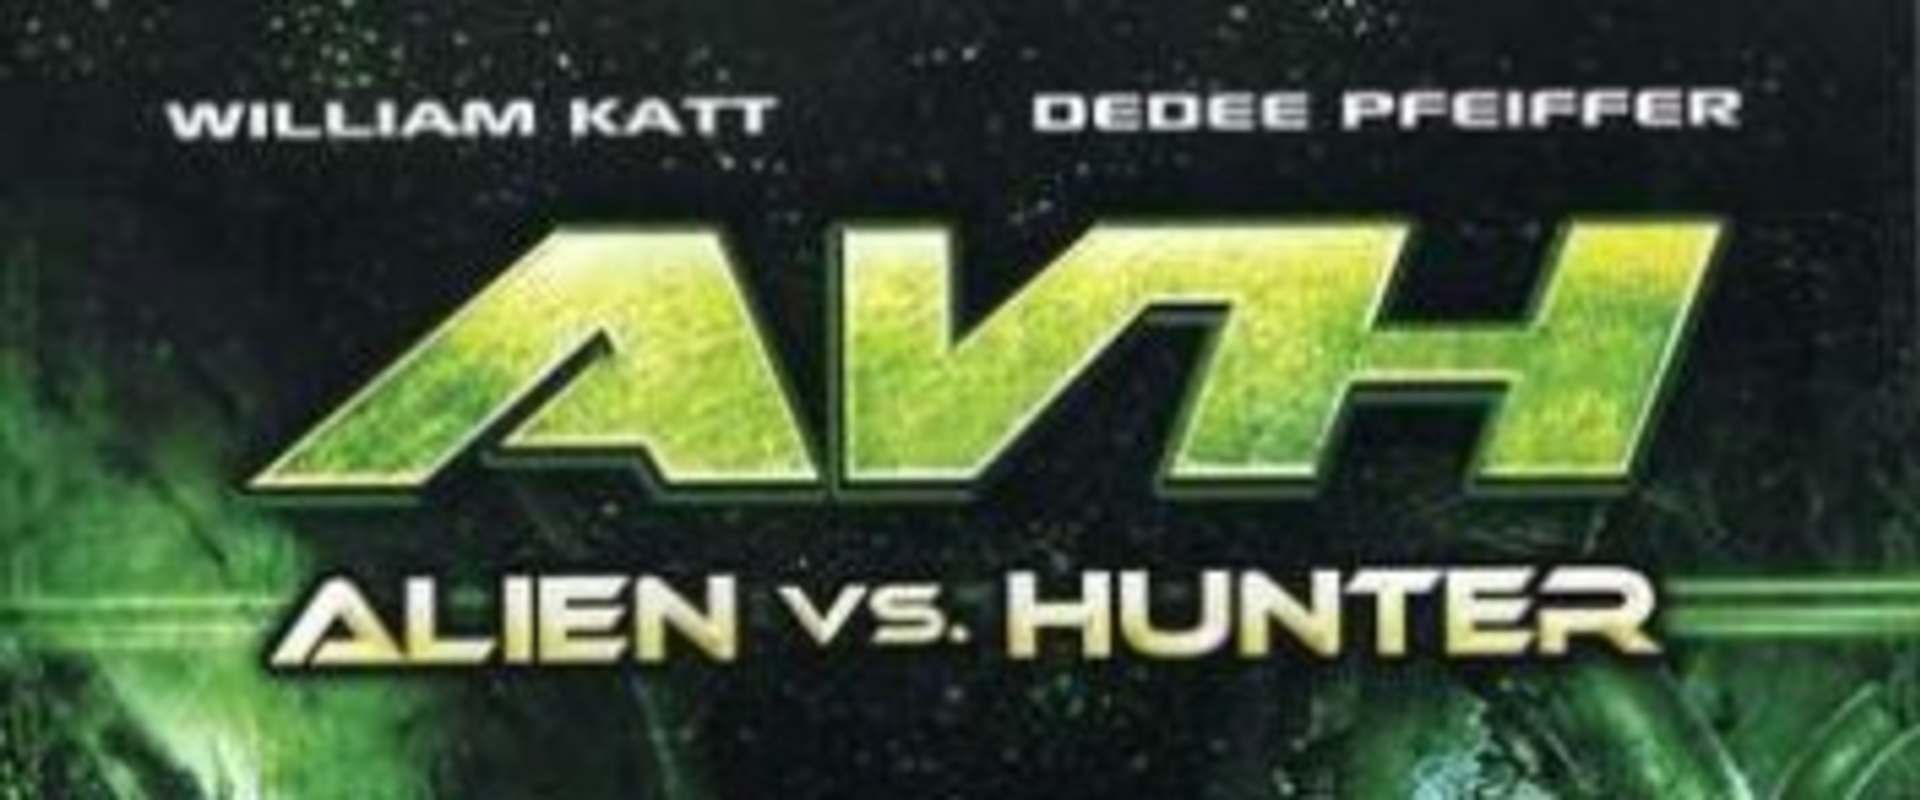 AVH: Alien vs. Hunter background 2